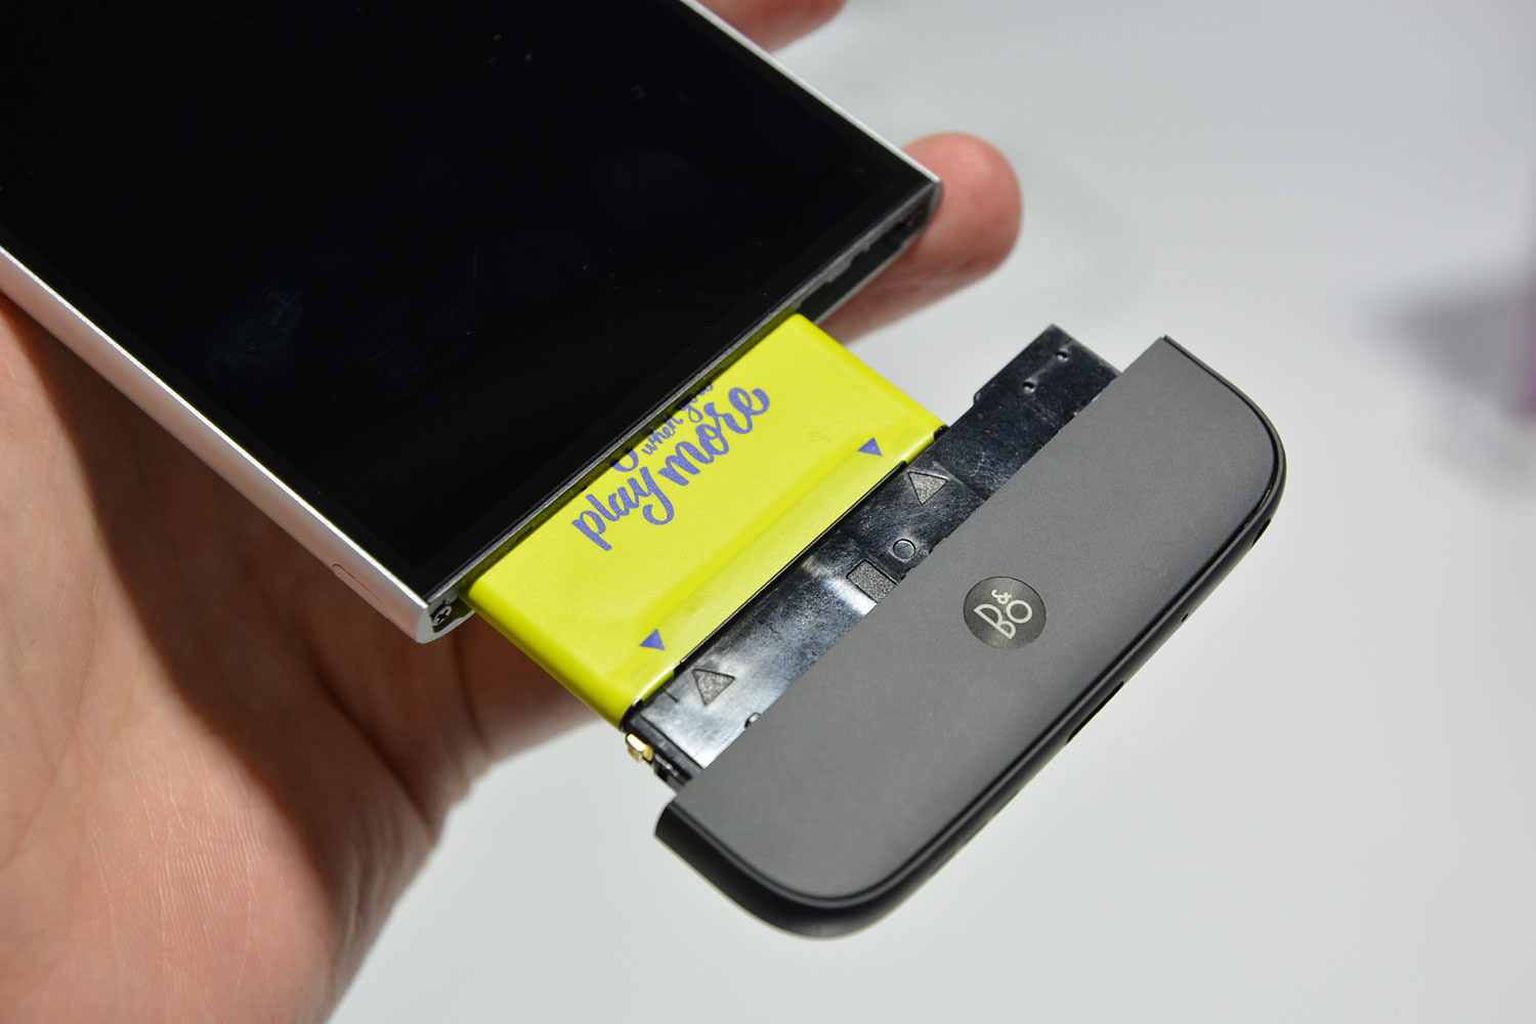 LG G5 on esimene katse viia moodultelefon massidesse. Sellega on võimalik ühendada lisaseadmeid.